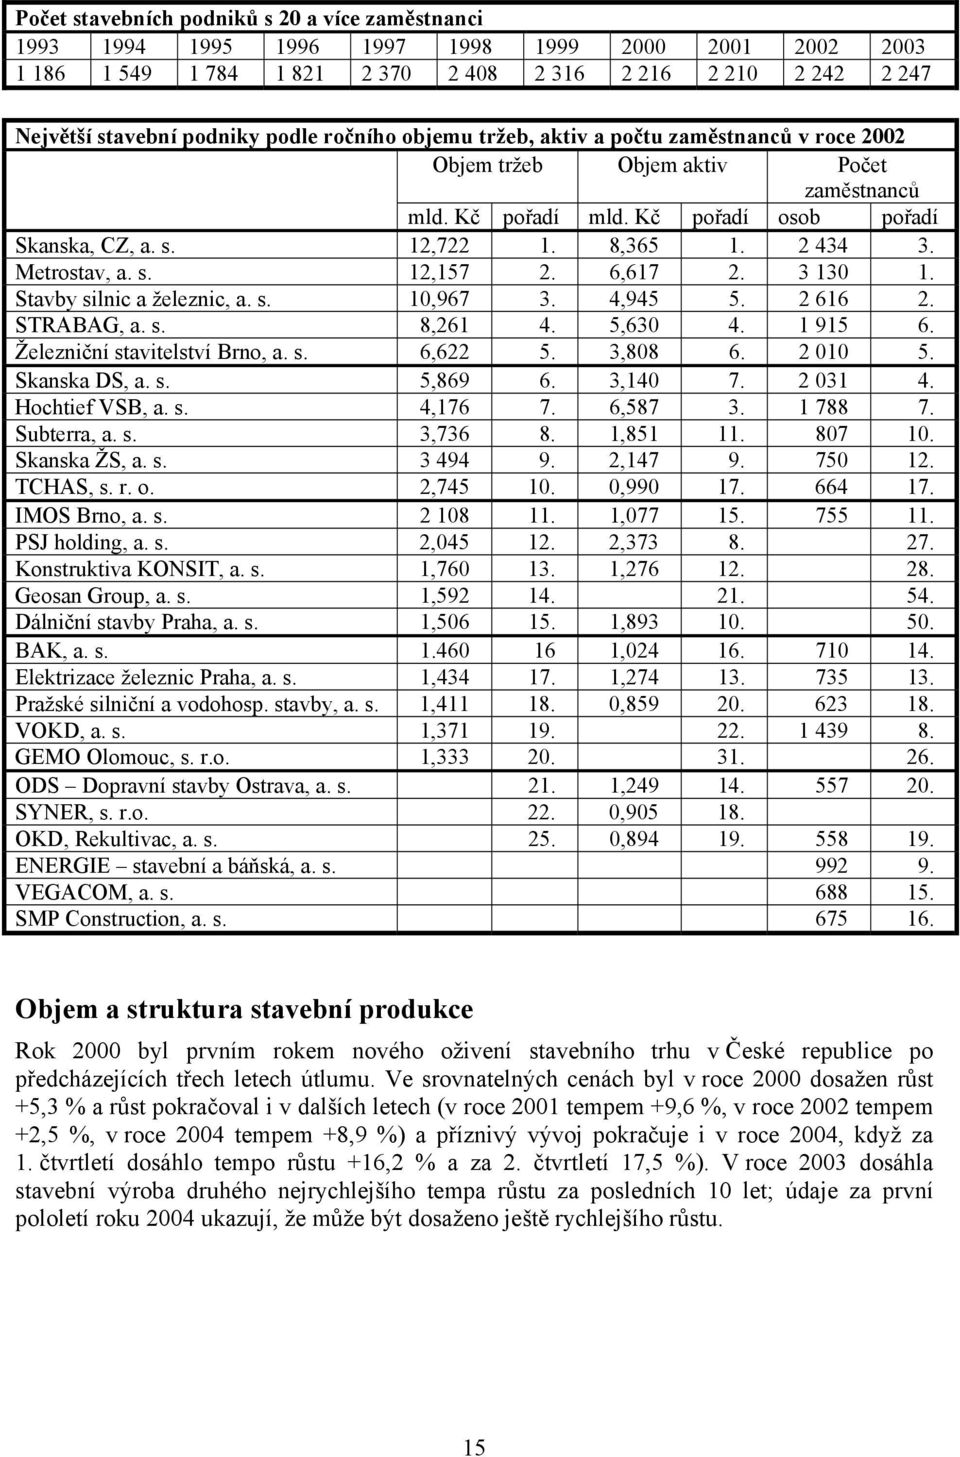 Metrostav, a. s. 12,157 2. 6,617 2. 3 130 1. Stavby silnic a železnic, a. s. 10,967 3. 4,945 5. 2 616 2. STRABAG, a. s. 8,261 4. 5,630 4. 1 915 6. Železniční stavitelství Brno, a. s. 6,622 5. 3,808 6.